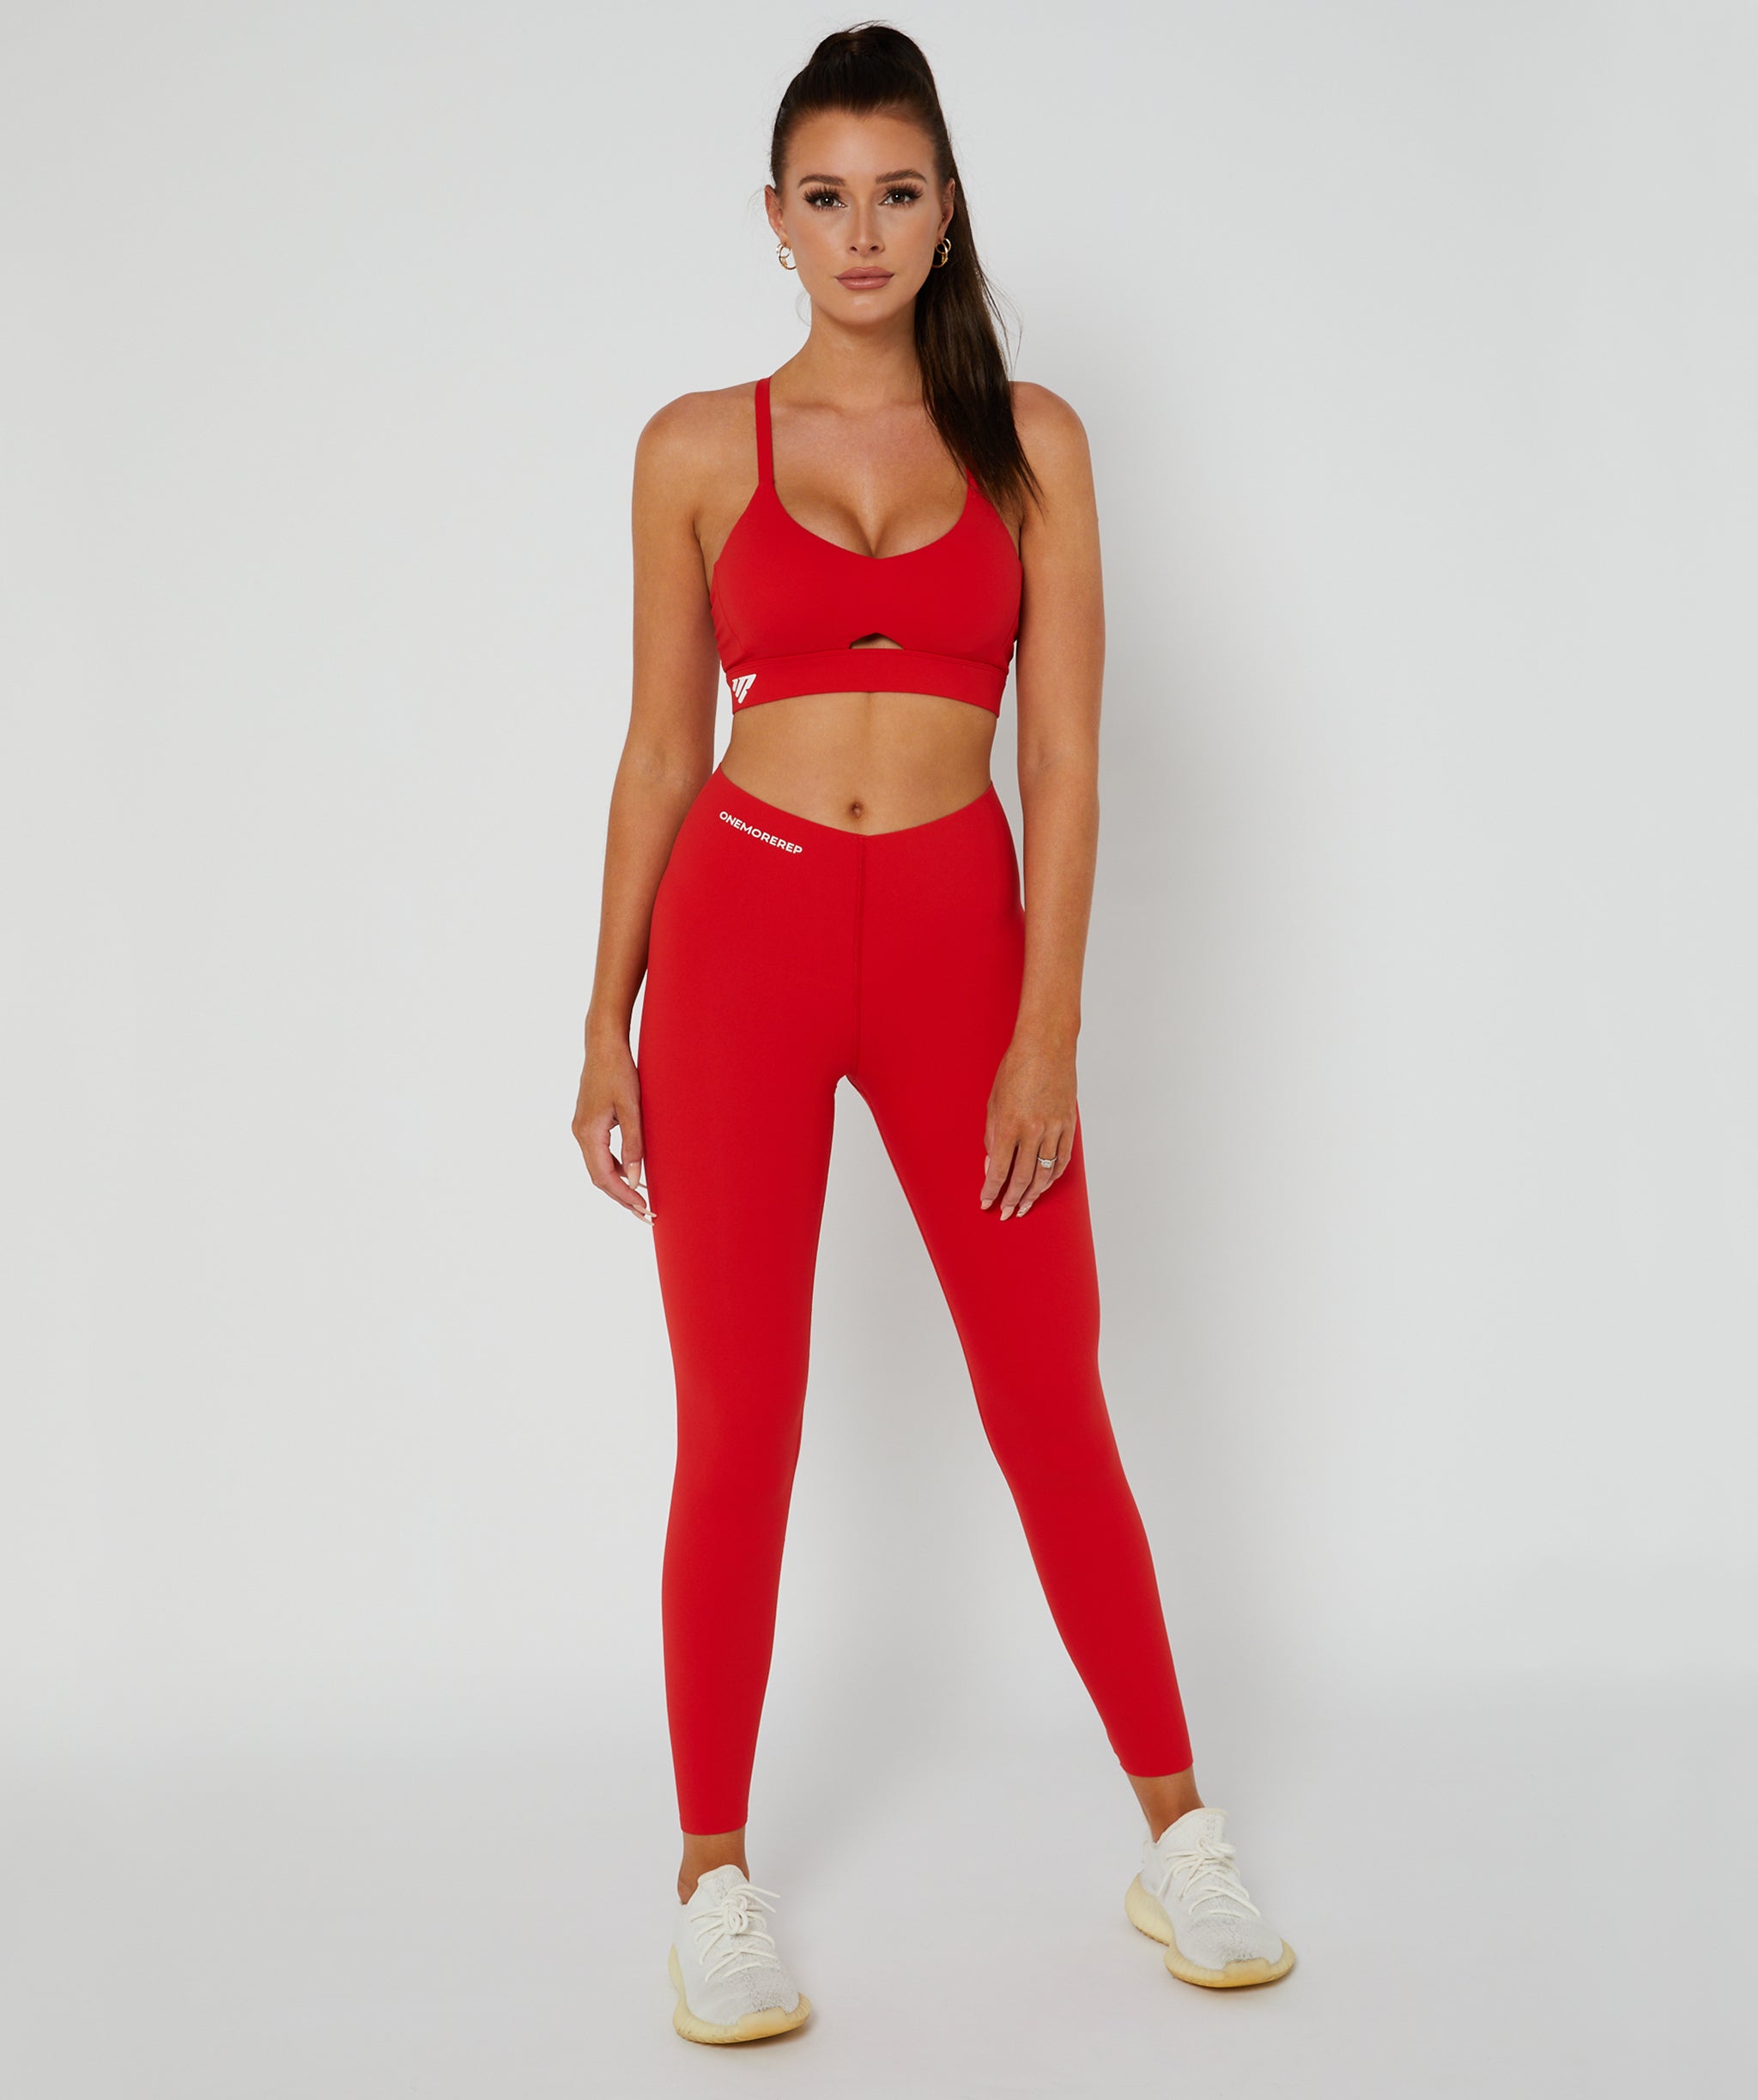 Sleek Leggings Full Length Red – OneMoreRep